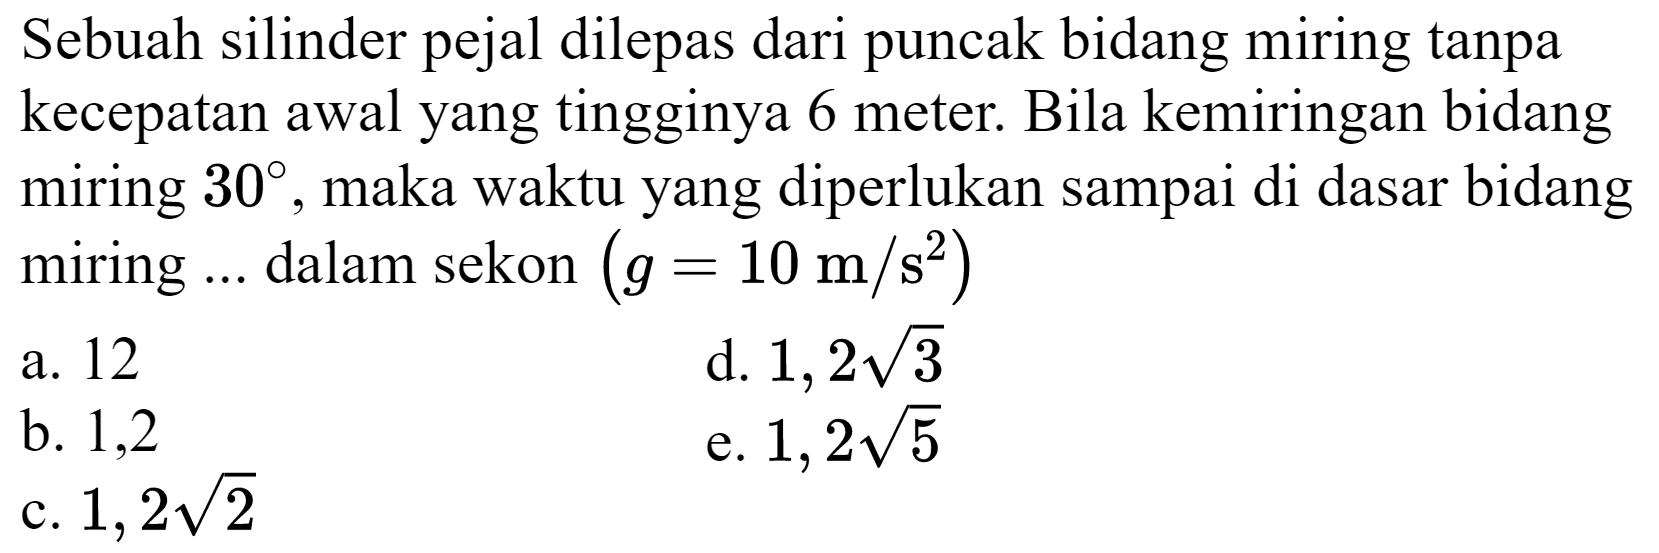 Sebuah silinder pejal dilepas dari puncak bidang miring tanpa kecepatan awal yang tingginya 6 meter. Bila kemiringan bidang miring  30 , maka waktu yang diperlukan sampai di dasar bidang miring  ...  dalam sekon  (g=10 m / s^(2)) 
a. 12
d.  1,2 akar(3) 
b. 1,2
e.  1,2 akar(5) 
c.  1,2 akar(2) 